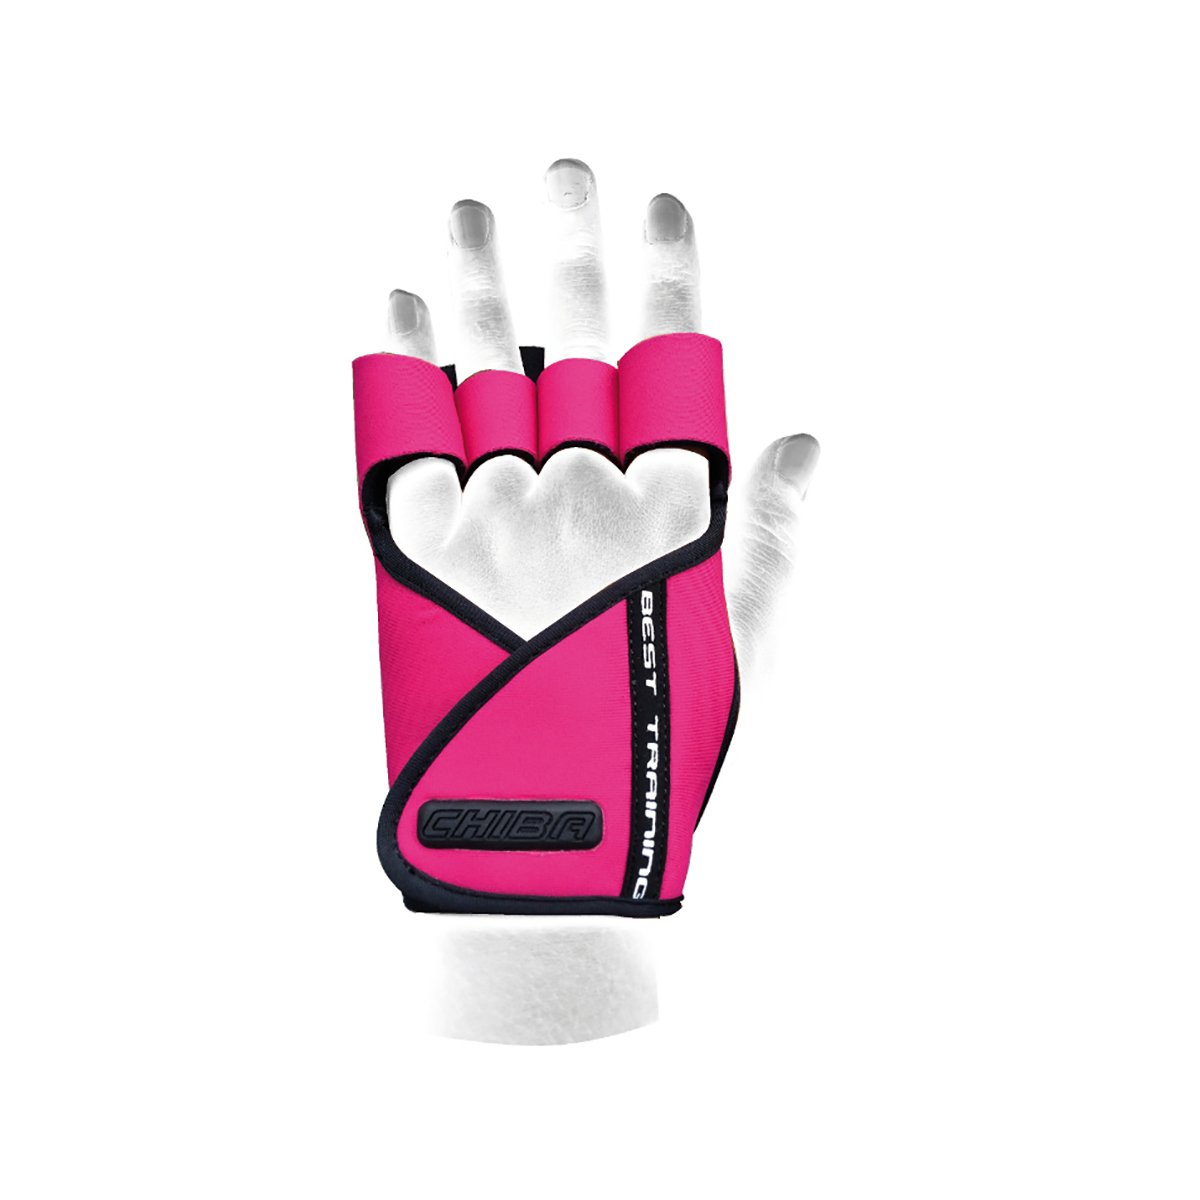 E-shop Dámske fitness rukavice Lady Motivation Pink - Chiba, veľ. S